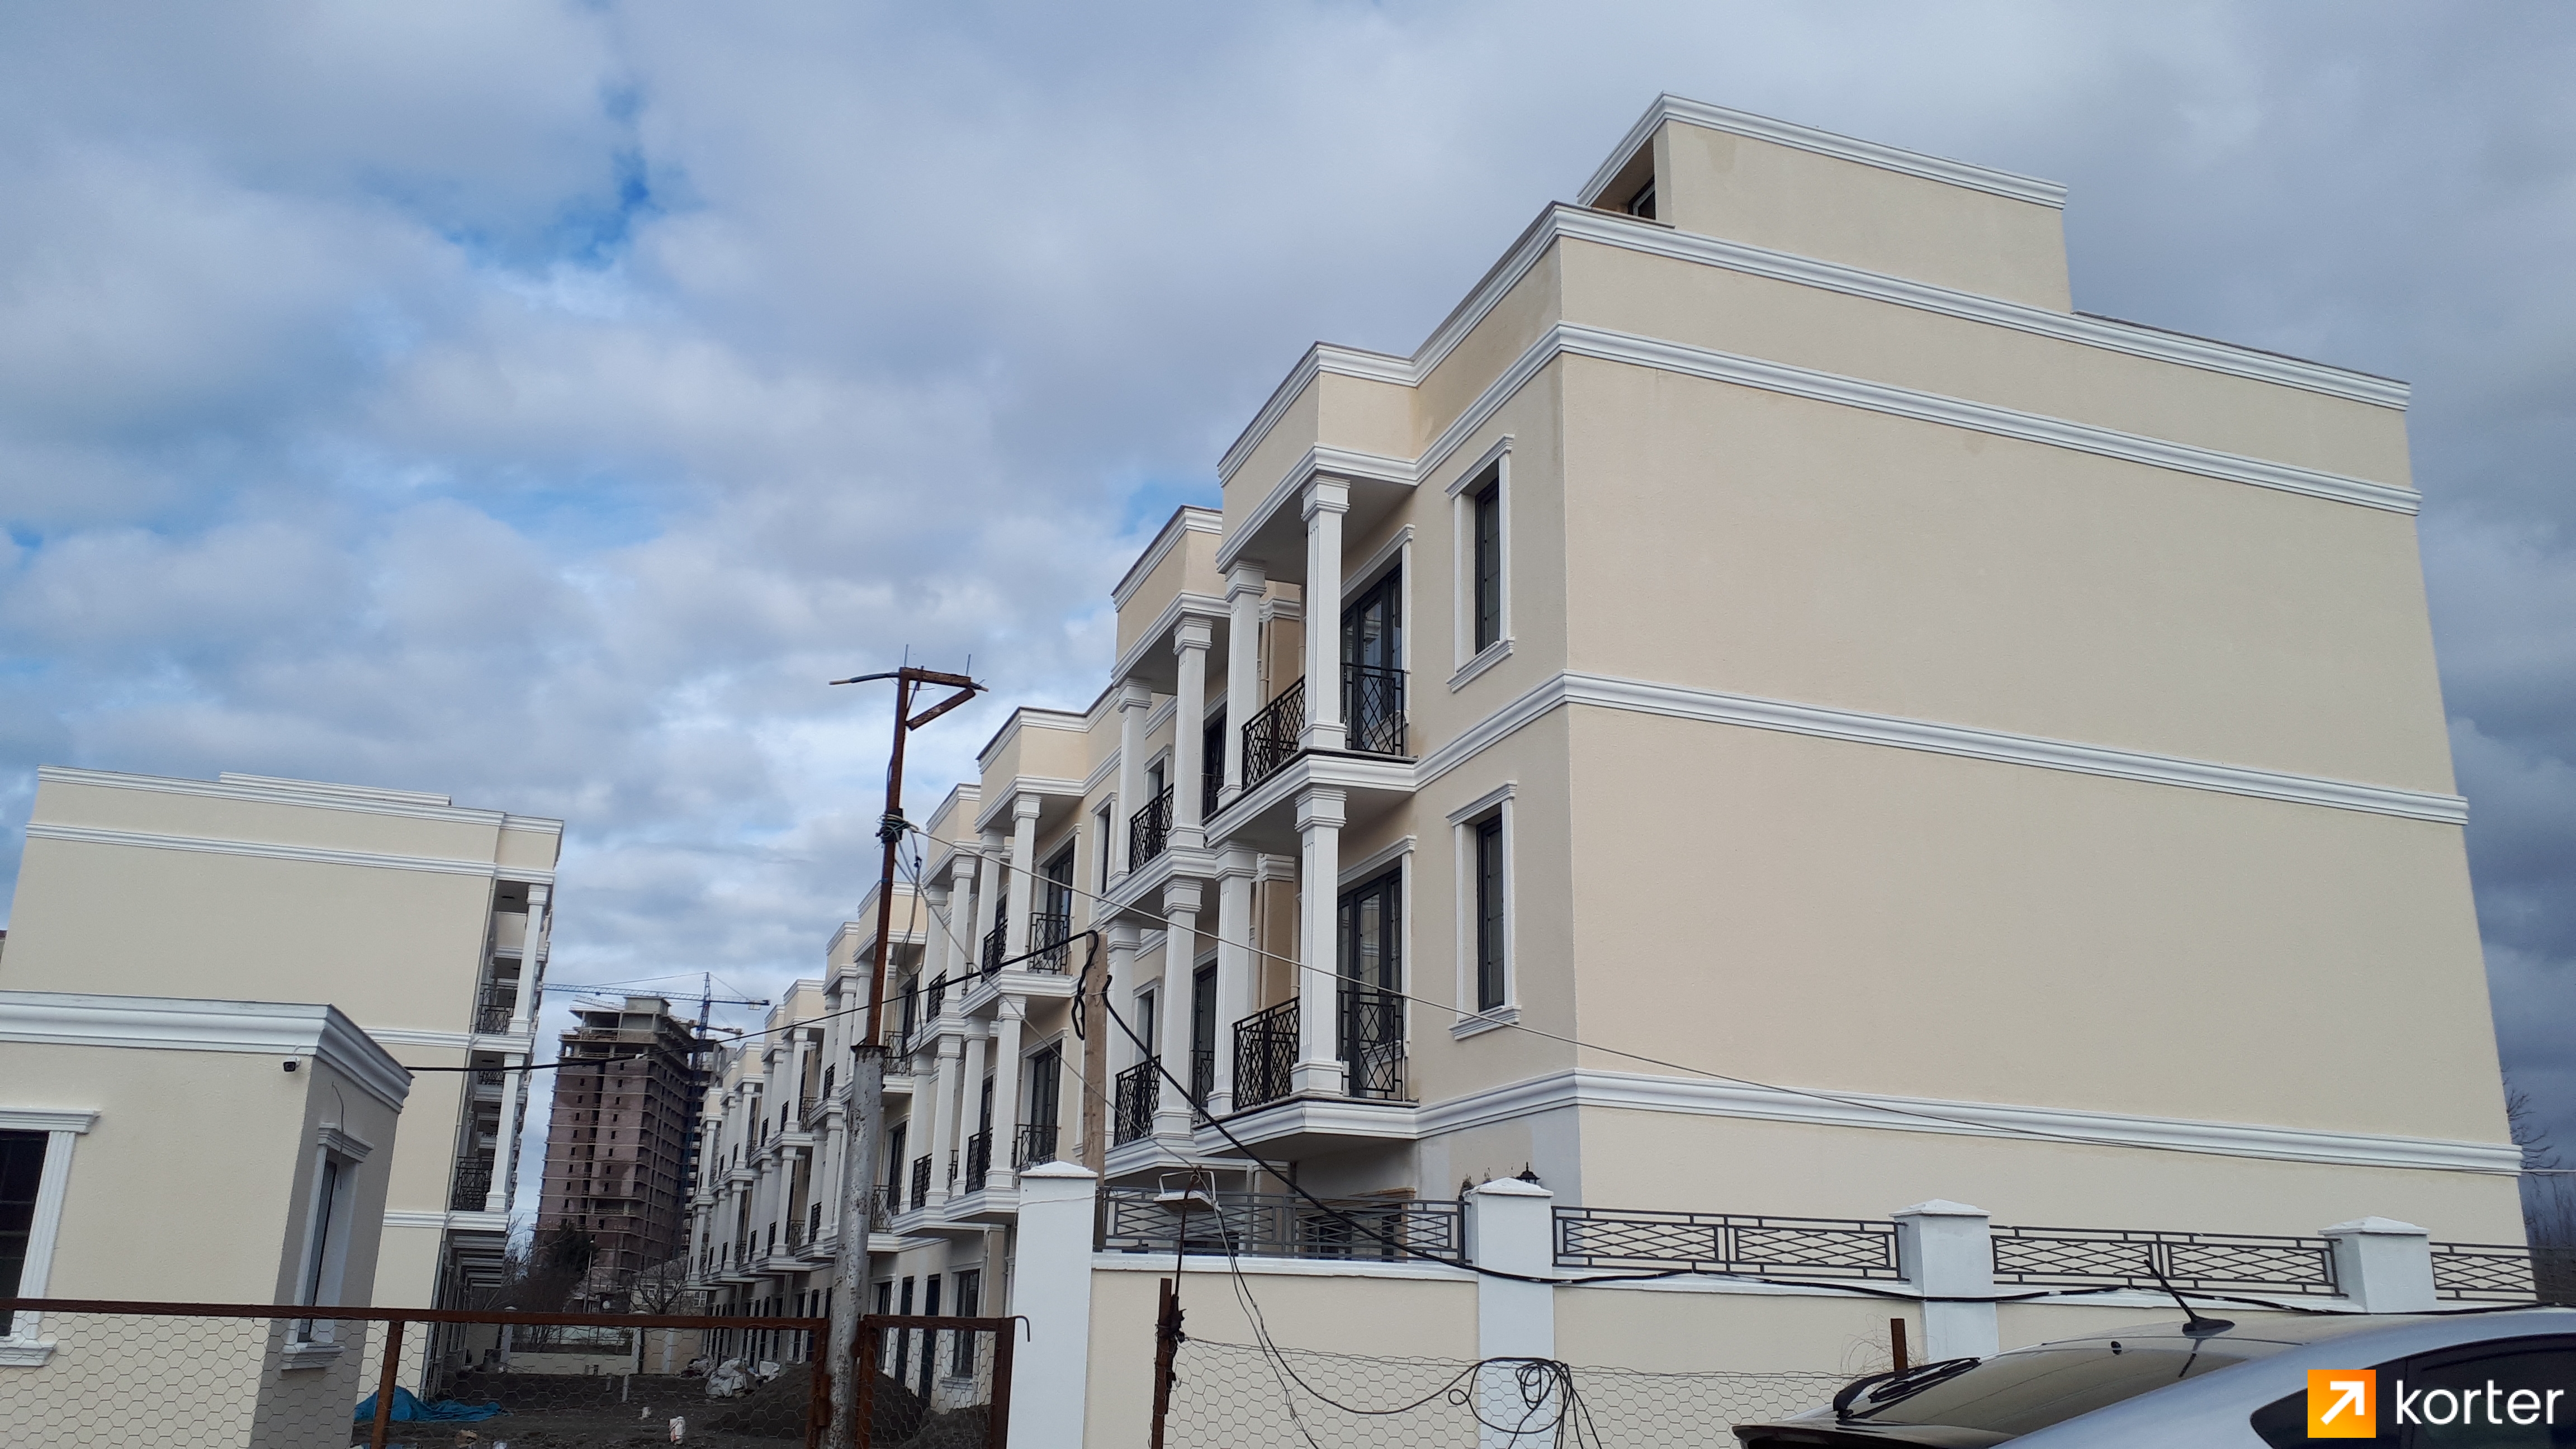 Construction progress Batumi Villas - Angle 2, February 2021